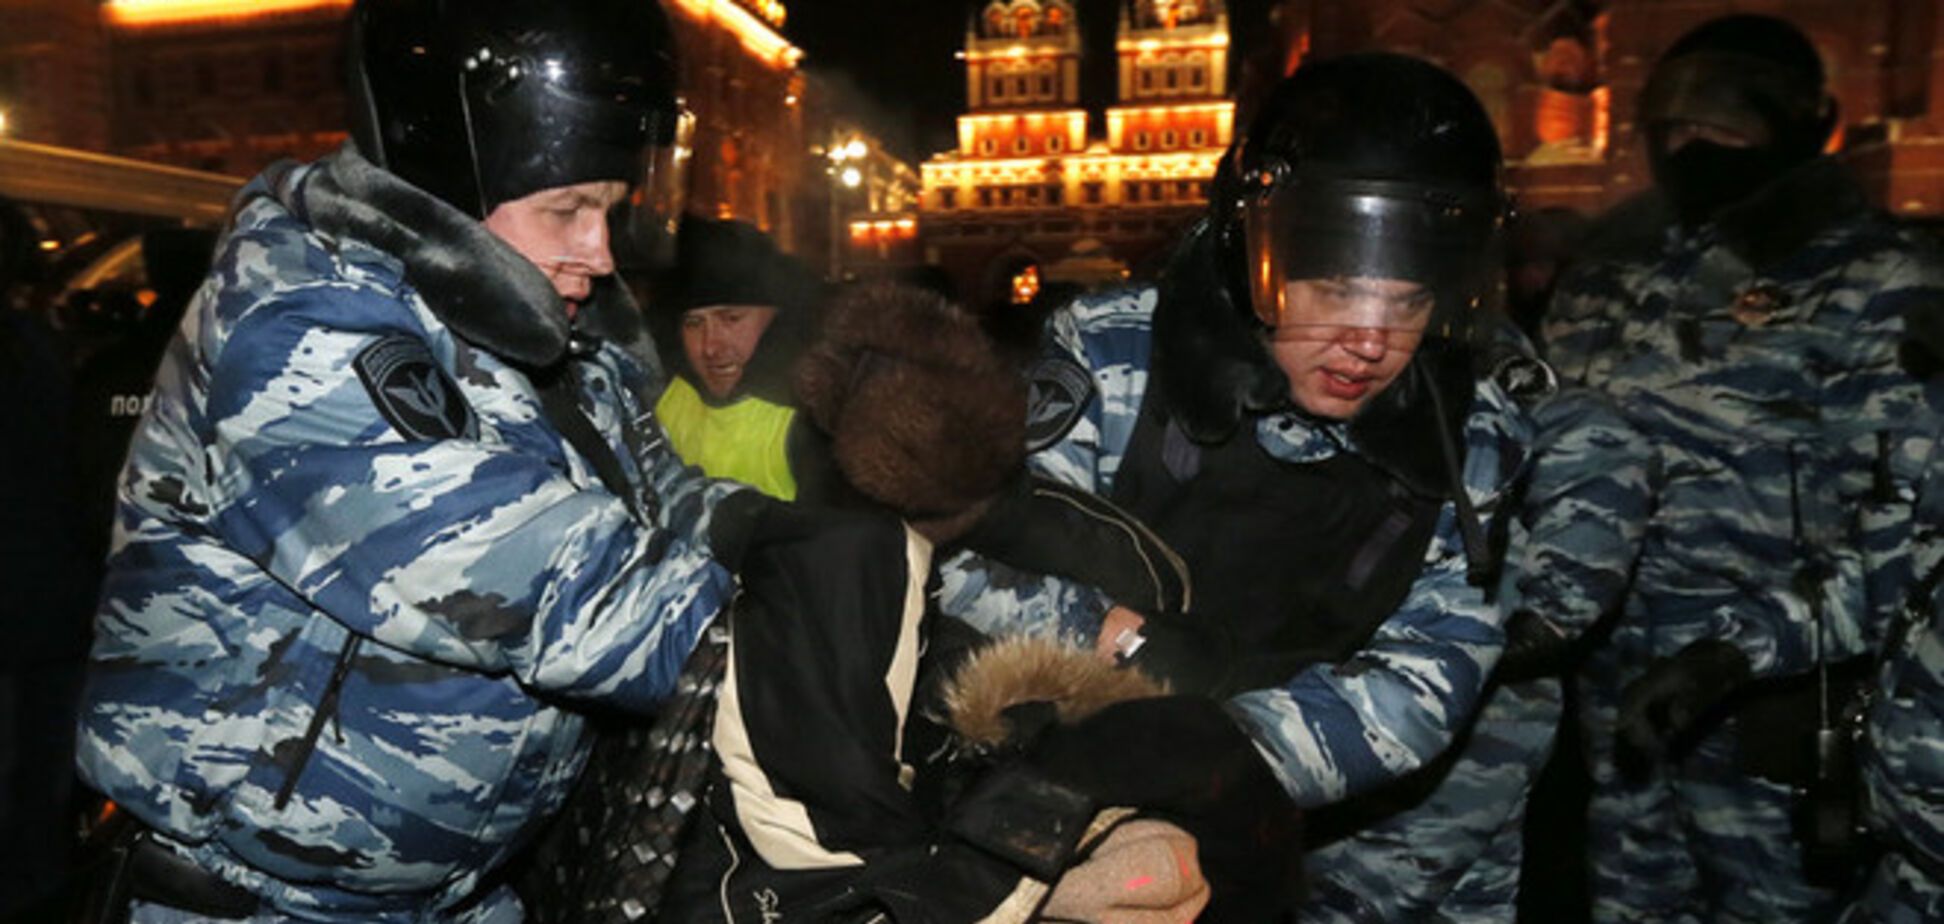 Российские активисты о митинге в Москве: нам многому стоит научиться у украинцев